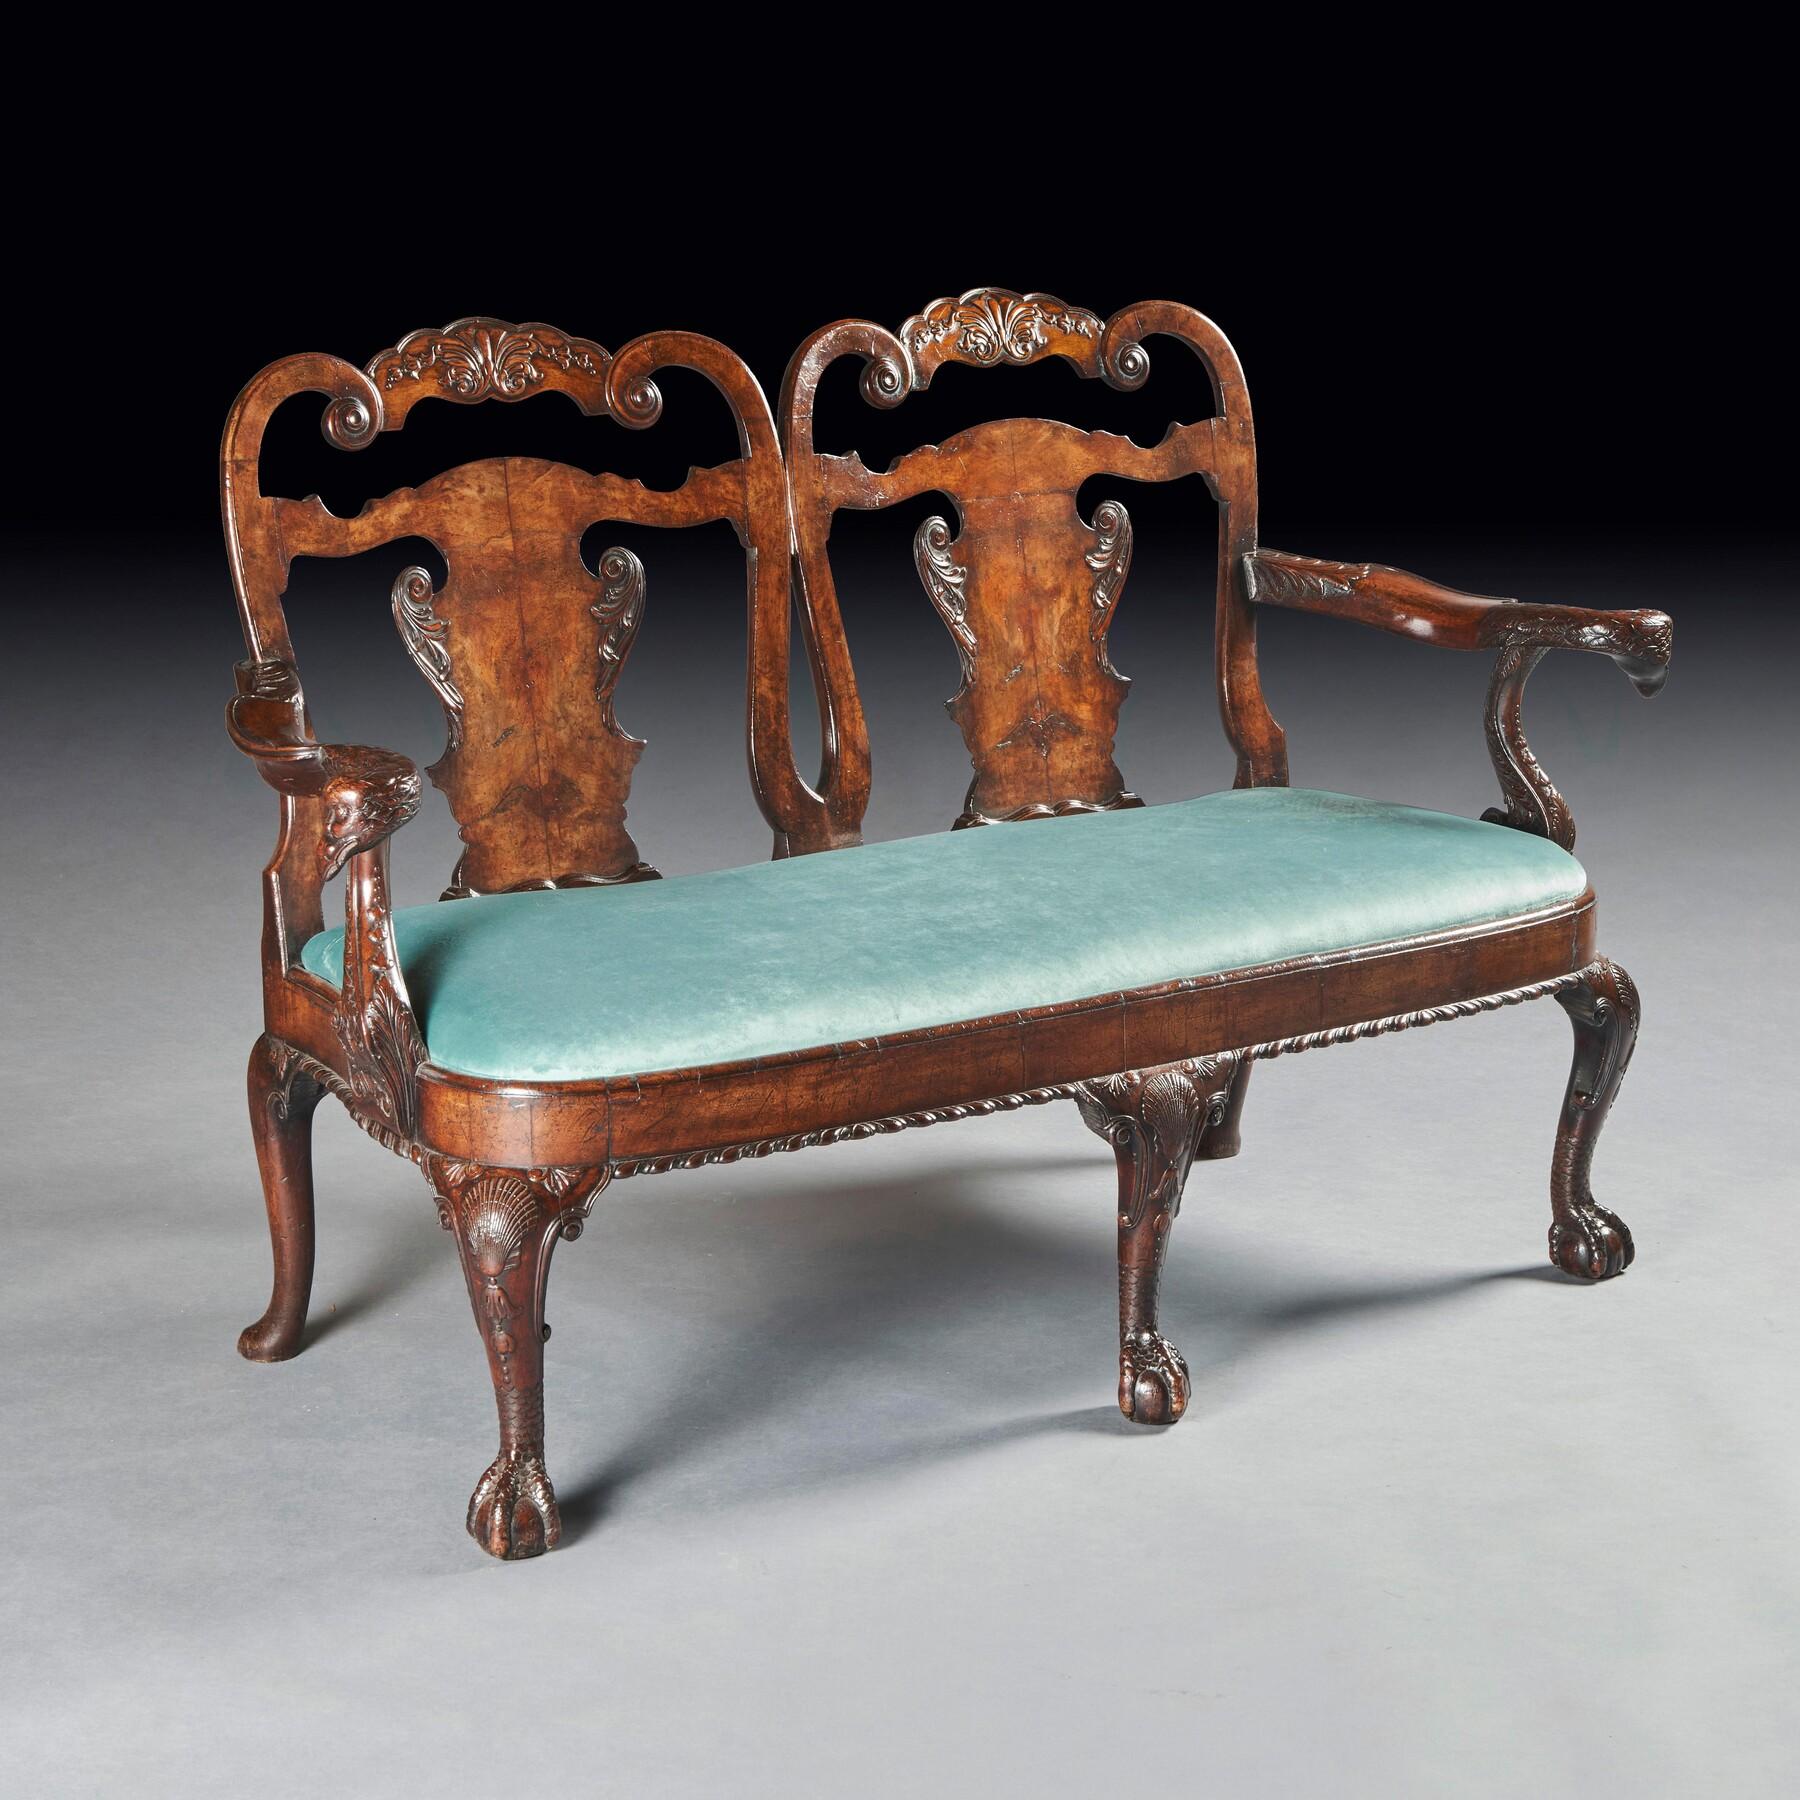 Eine hervorragende Qualität späten 19. Jahrhundert Nussbaum Doppel Stuhl zurück Sofa / Sofa nach einem George II Design von Giles Grendey's .

Englisch CIRCA 1880.

Ein wundervolles Sofa, dessen Rückenlehne mit geschnitzten Kämmen über vasenförmigen